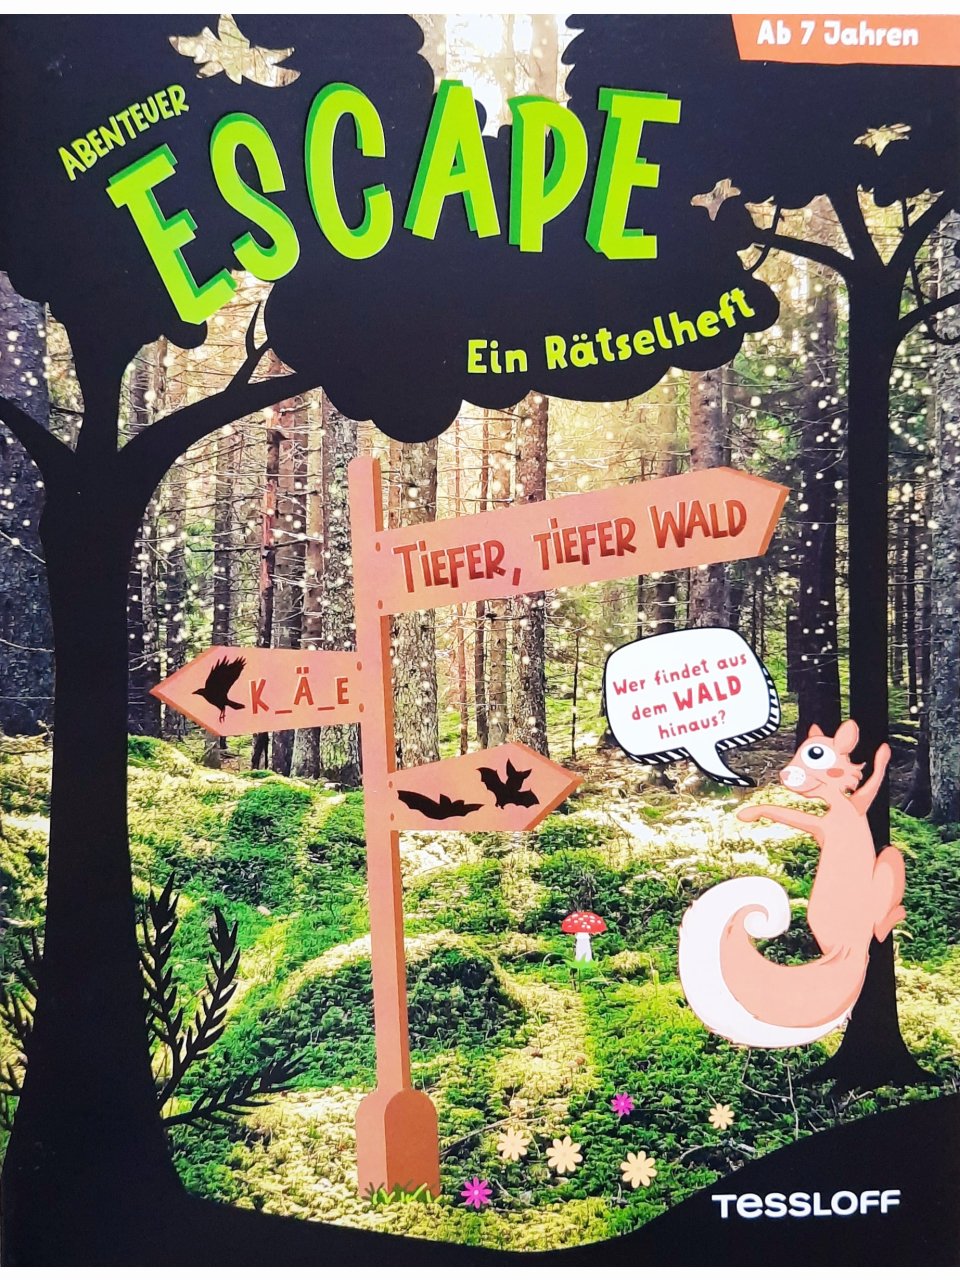 Abenteuer Escape: Tiefer, tiefer Wald – Wer findet aus dem Wald hinaus?